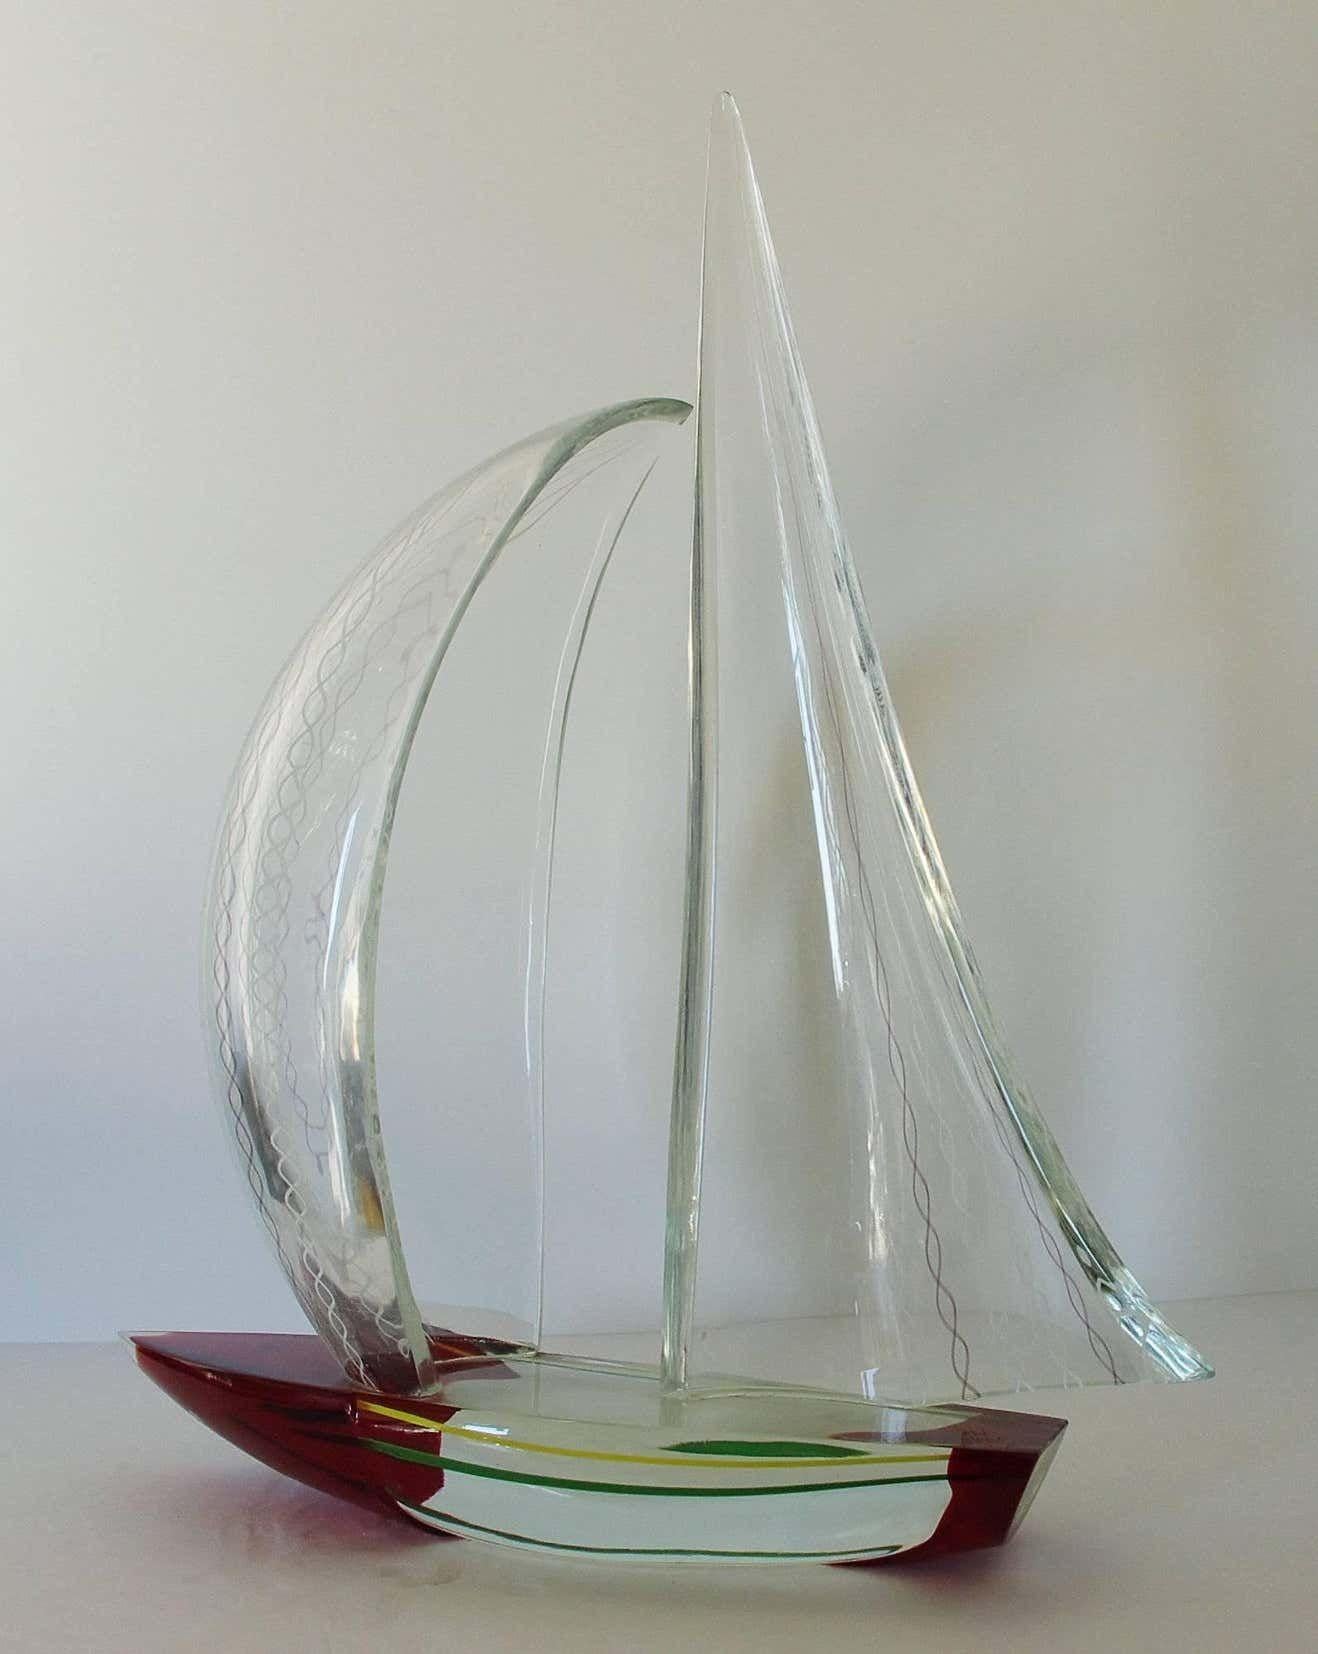 Murano Glass Sailboat Sculpture by Alberto Dona'